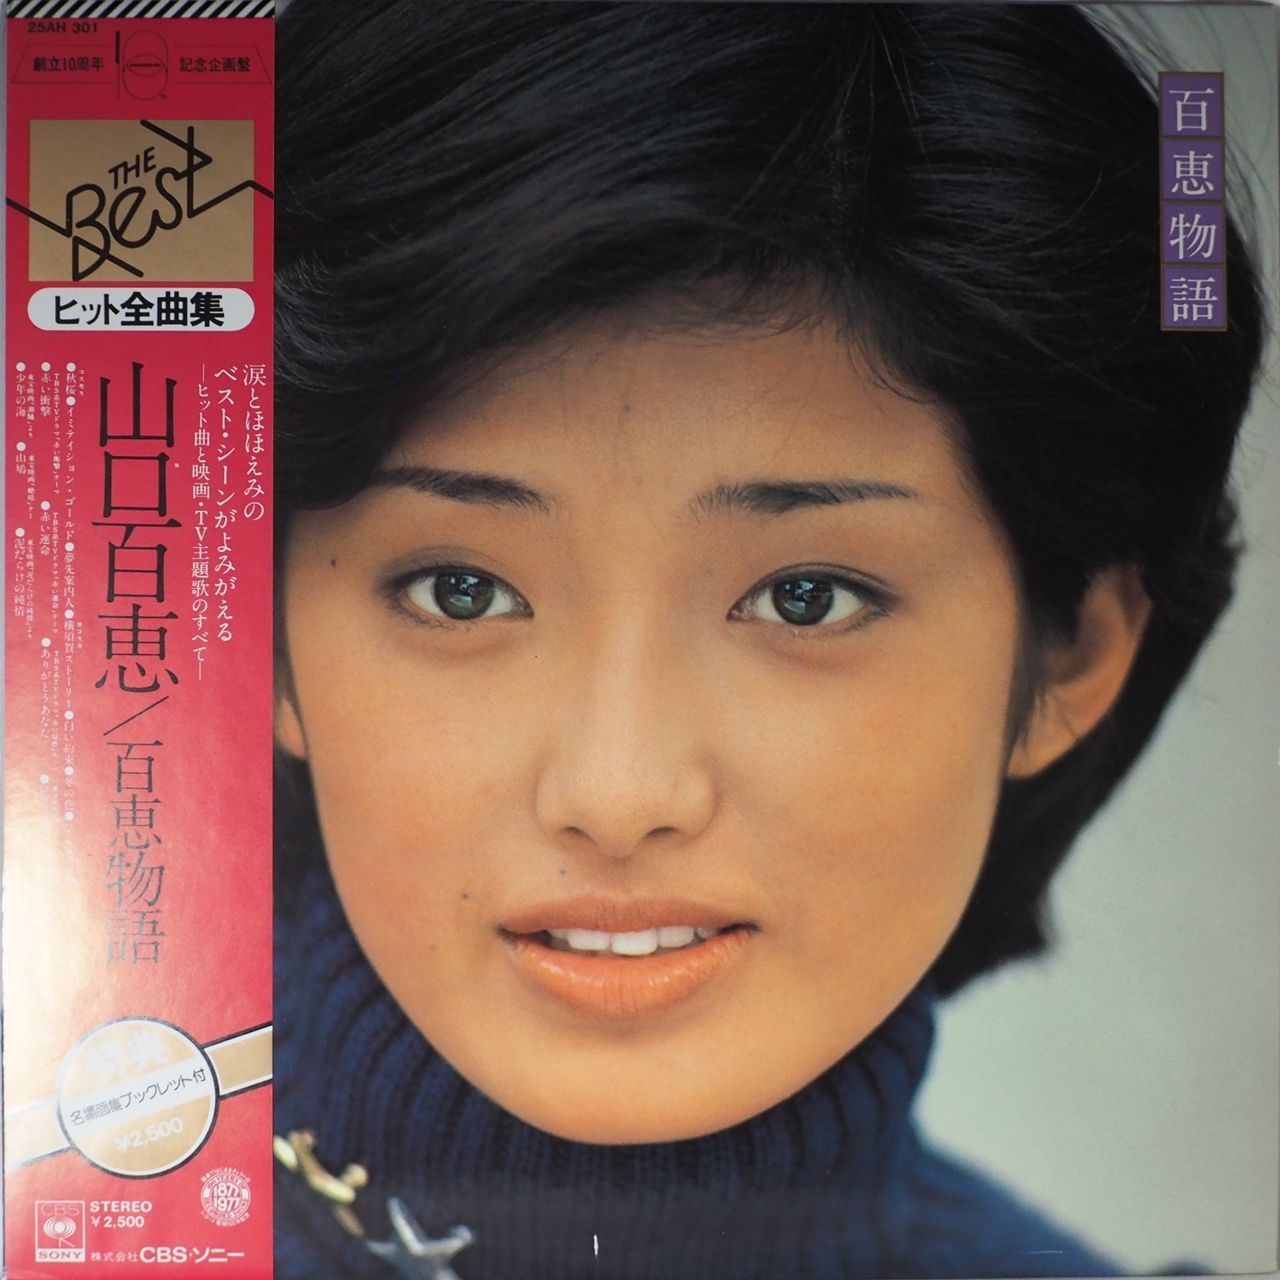 山口百恵 『百恵伝説』LP レコード - 邦楽